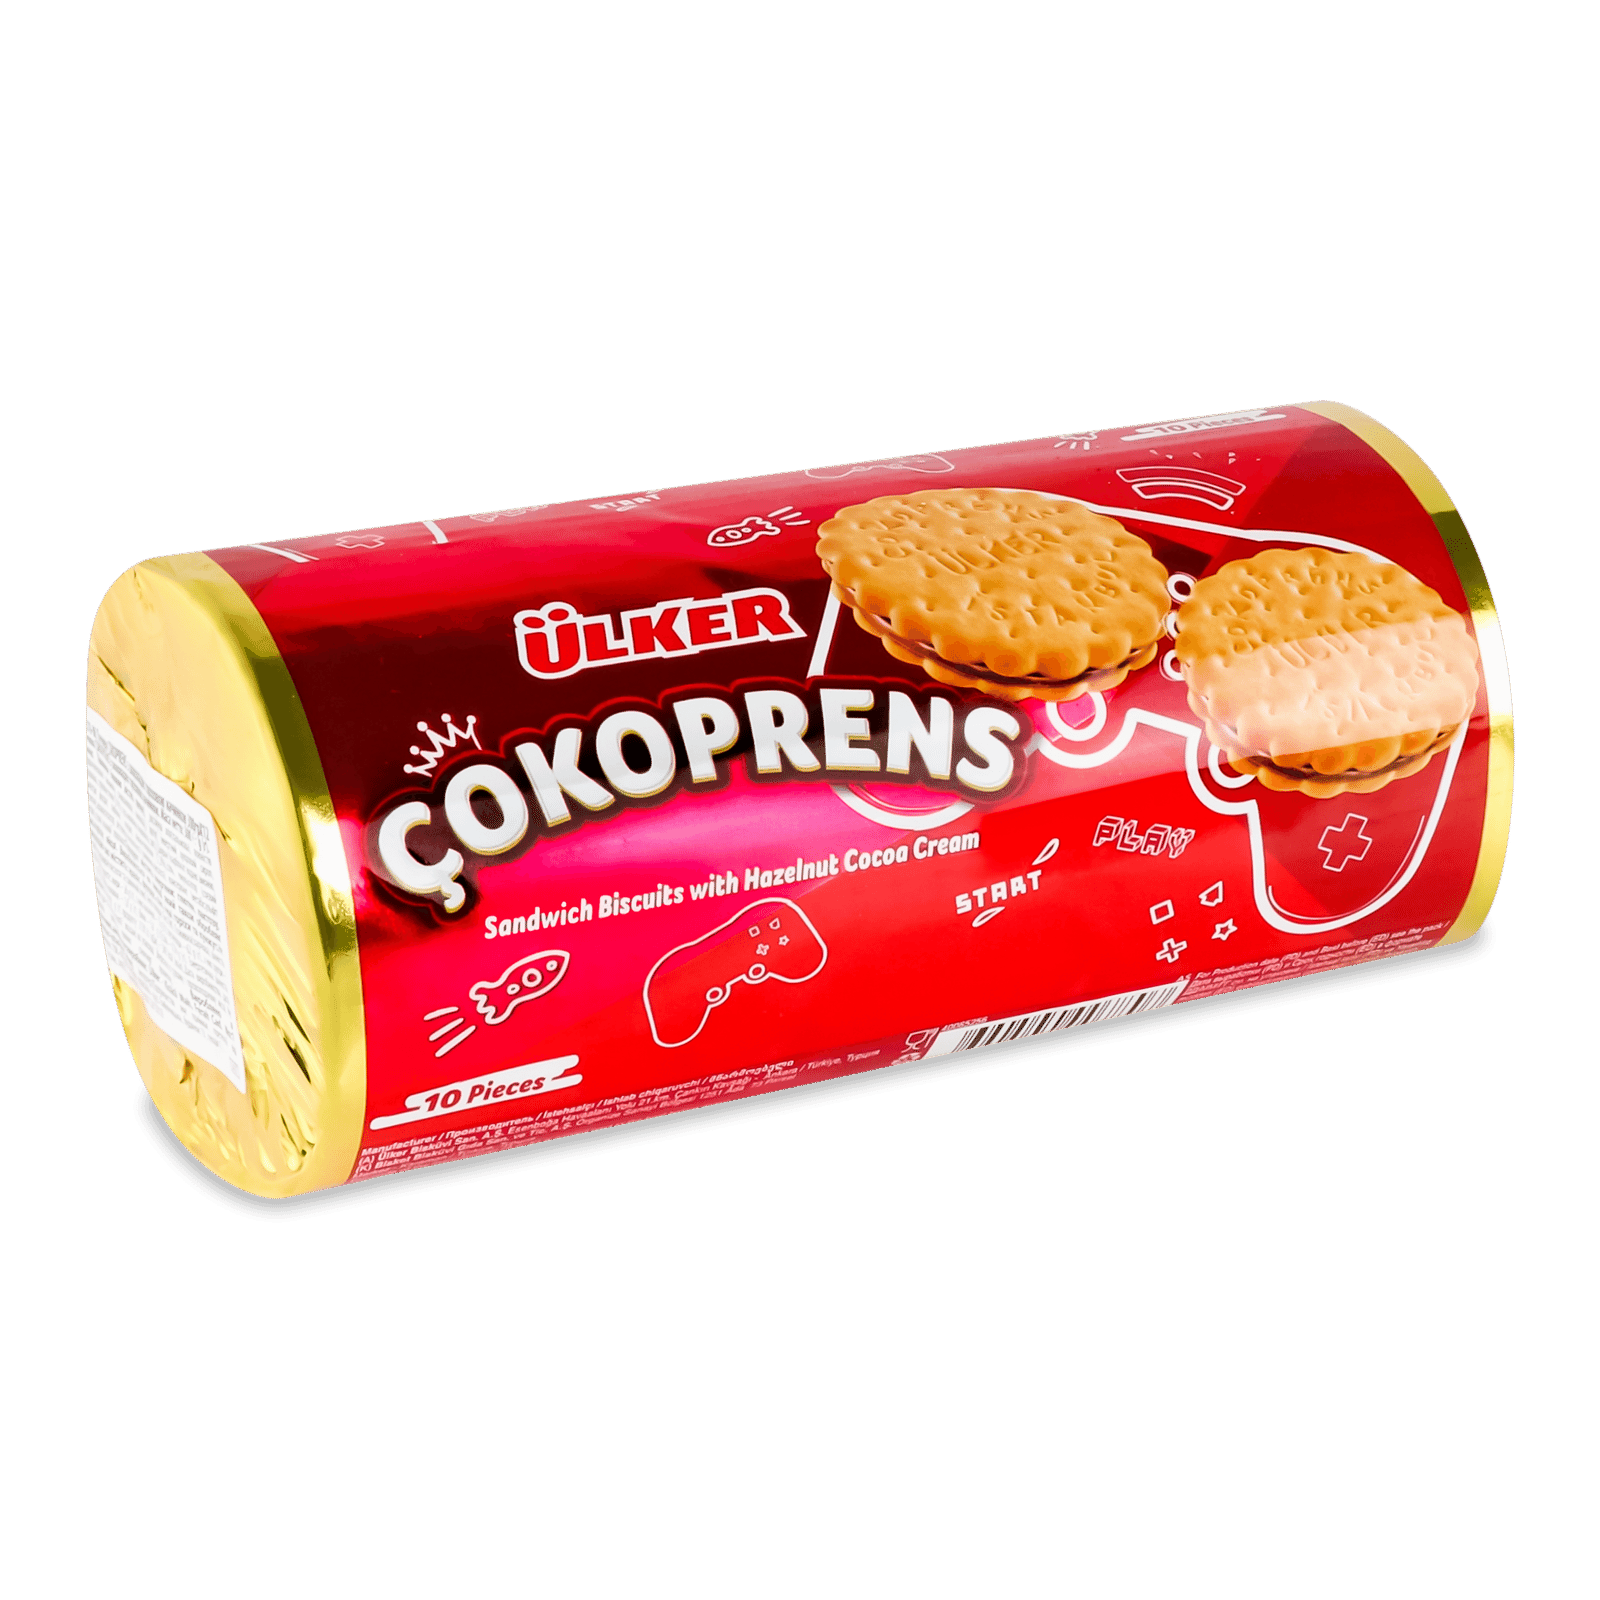 Печиво Ulker Cokoprens з шоколадно-горіховою начинкою - 1